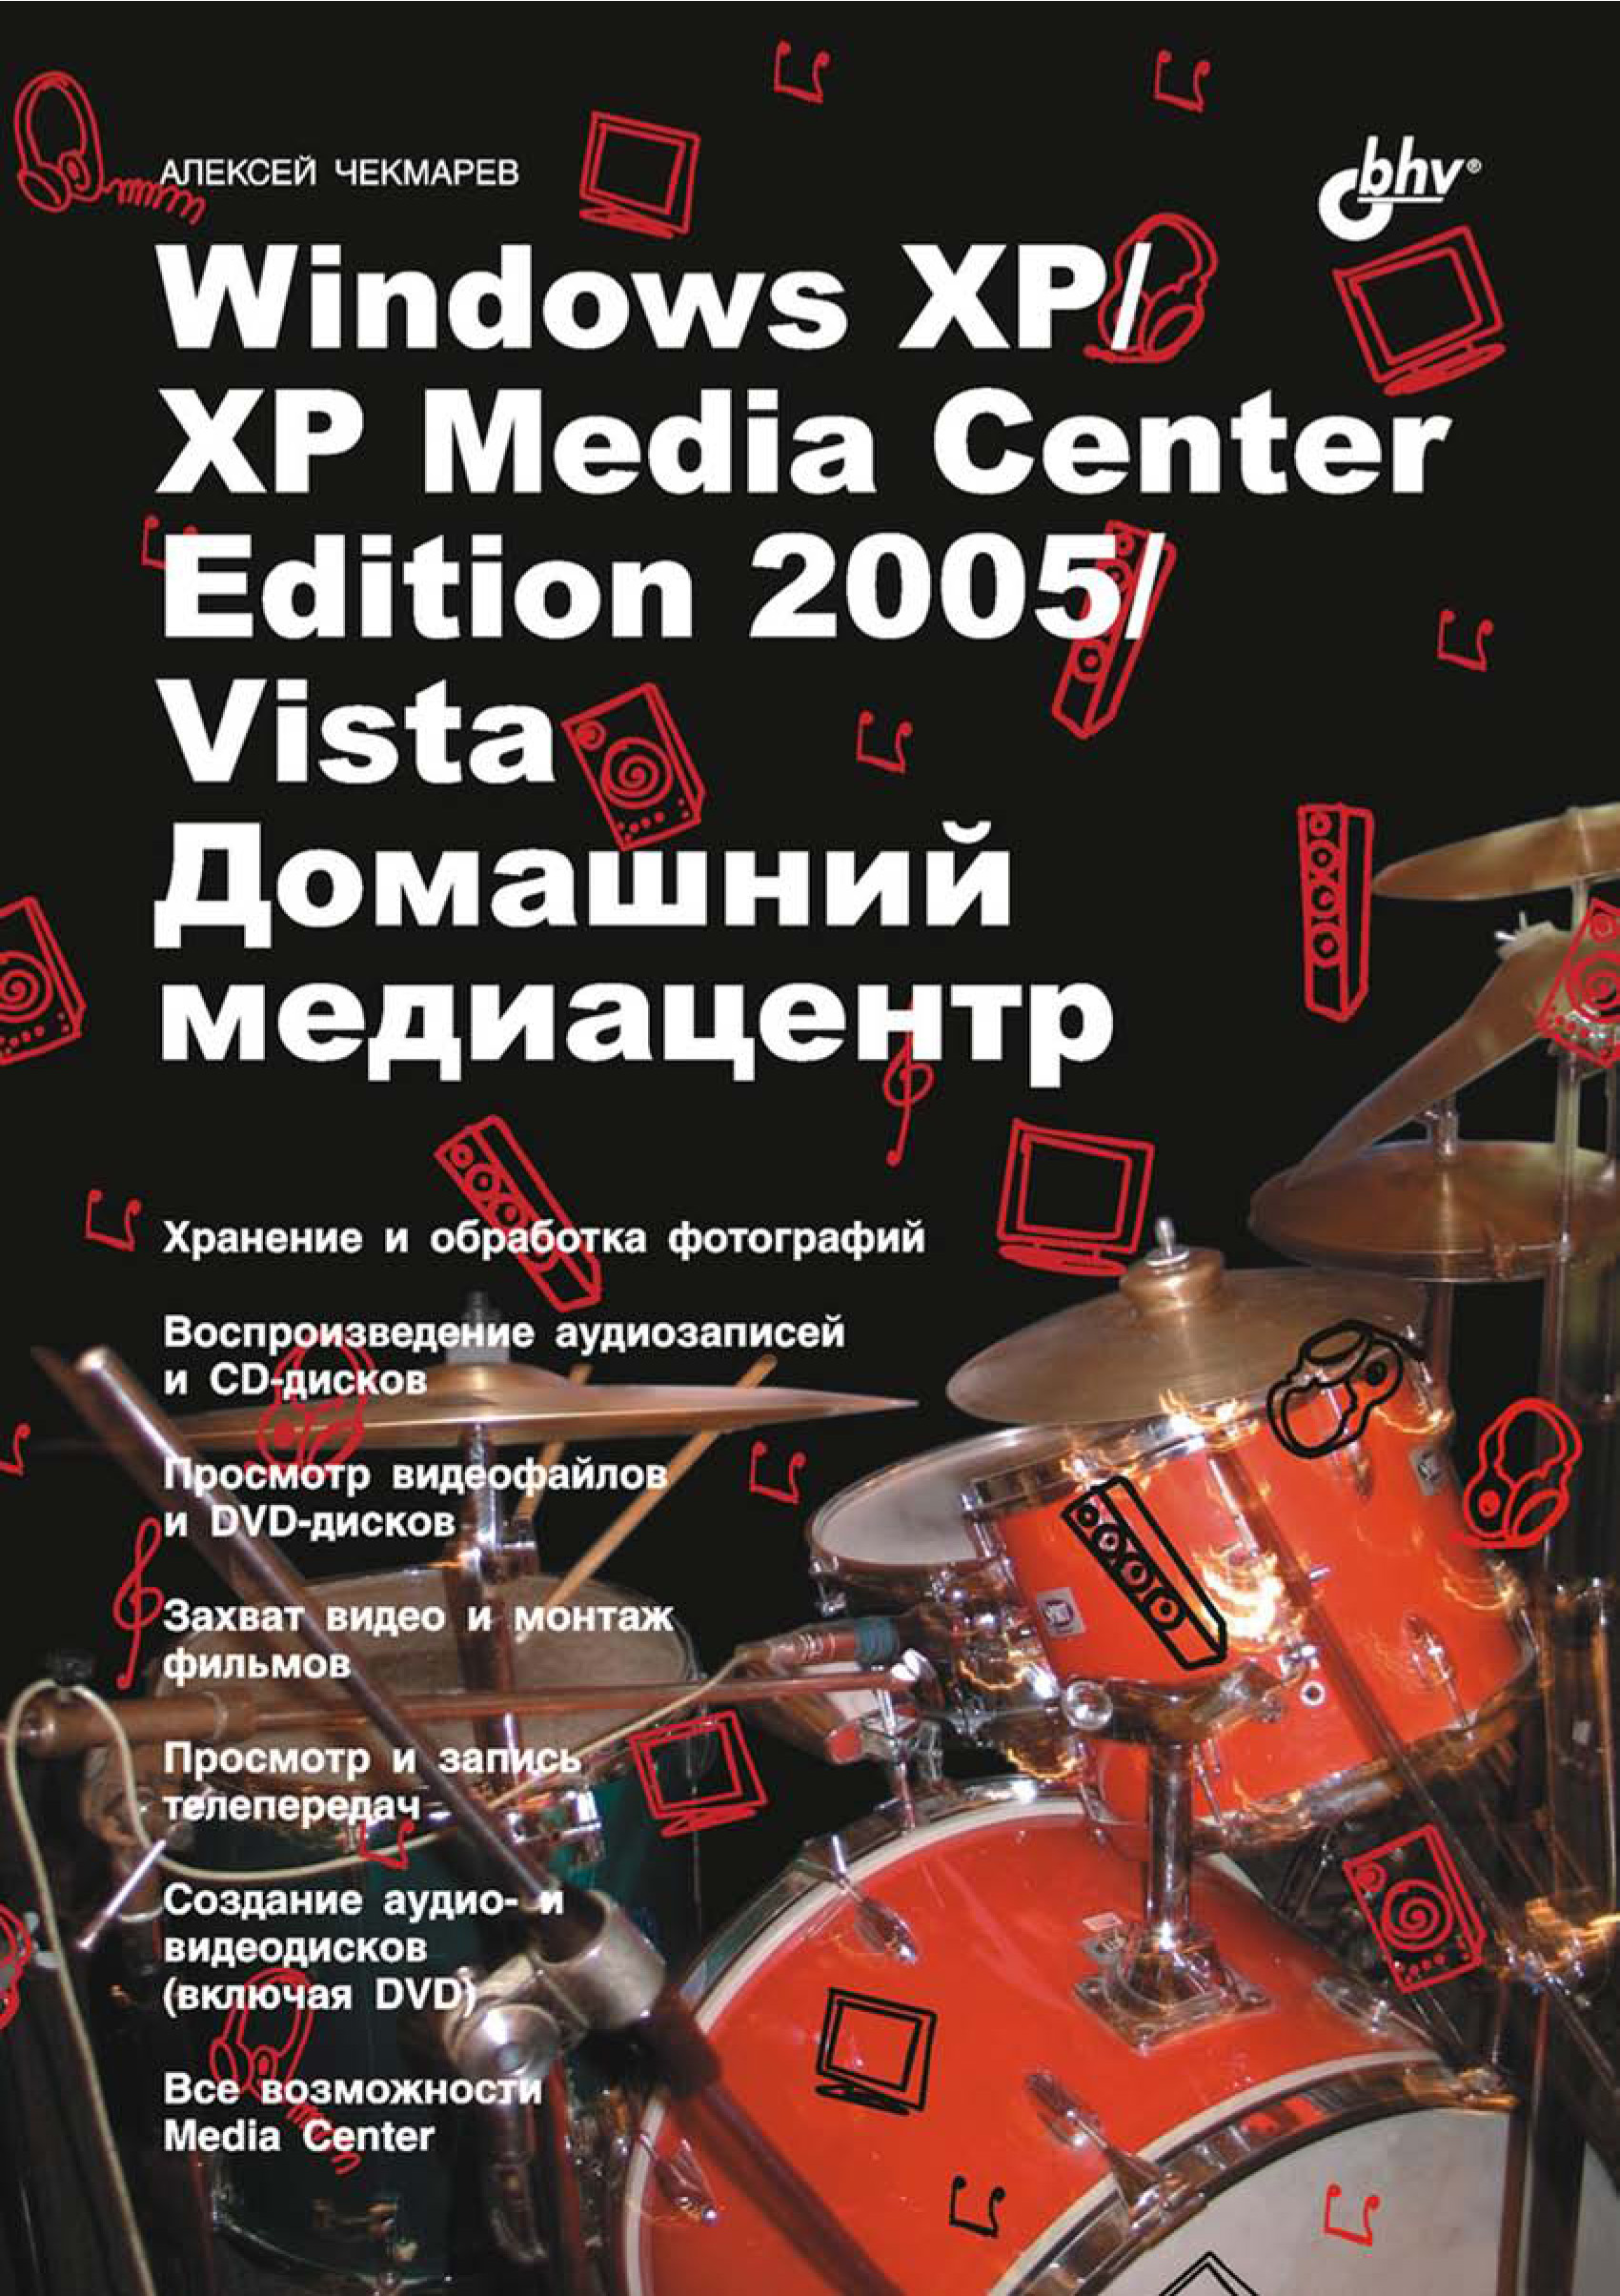 Книга  Windows XP / XP Media Center Edition / Vista. Домашний медиацентр созданная Алексей Чекмарев может относится к жанру ОС и сети. Стоимость электронной книги Windows XP / XP Media Center Edition / Vista. Домашний медиацентр с идентификатором 6657957 составляет 119.00 руб.